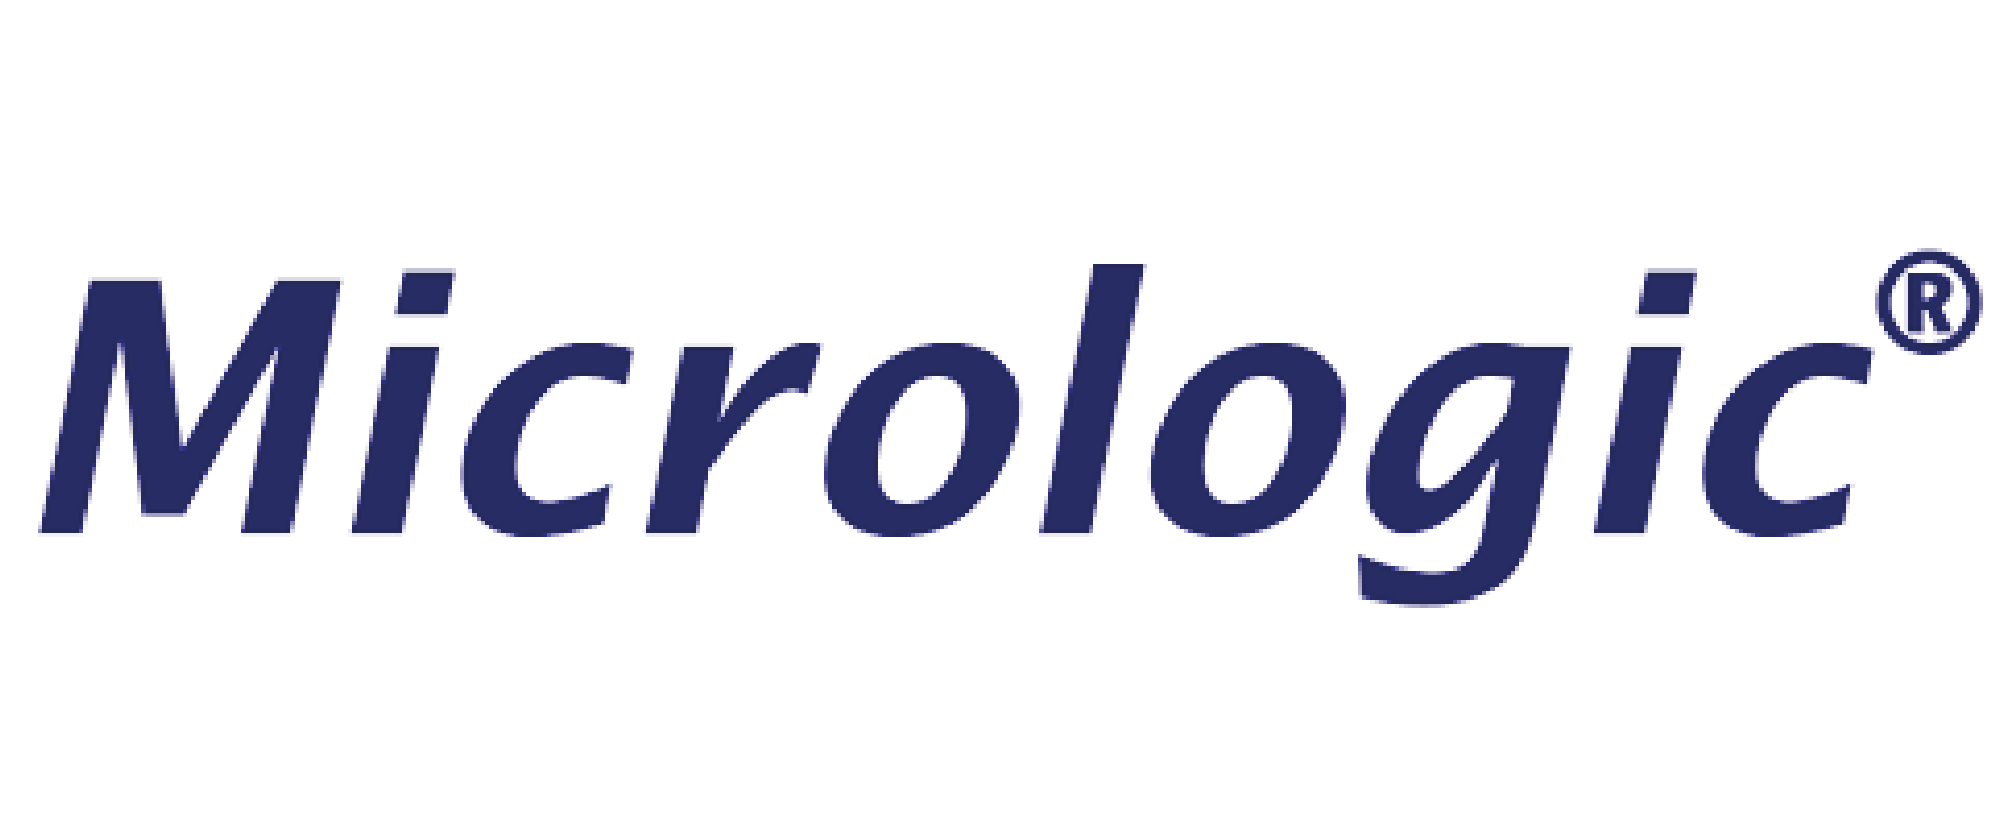 NeuroCheck Integrator Micrologic (Abbildung © NeuroCheck)